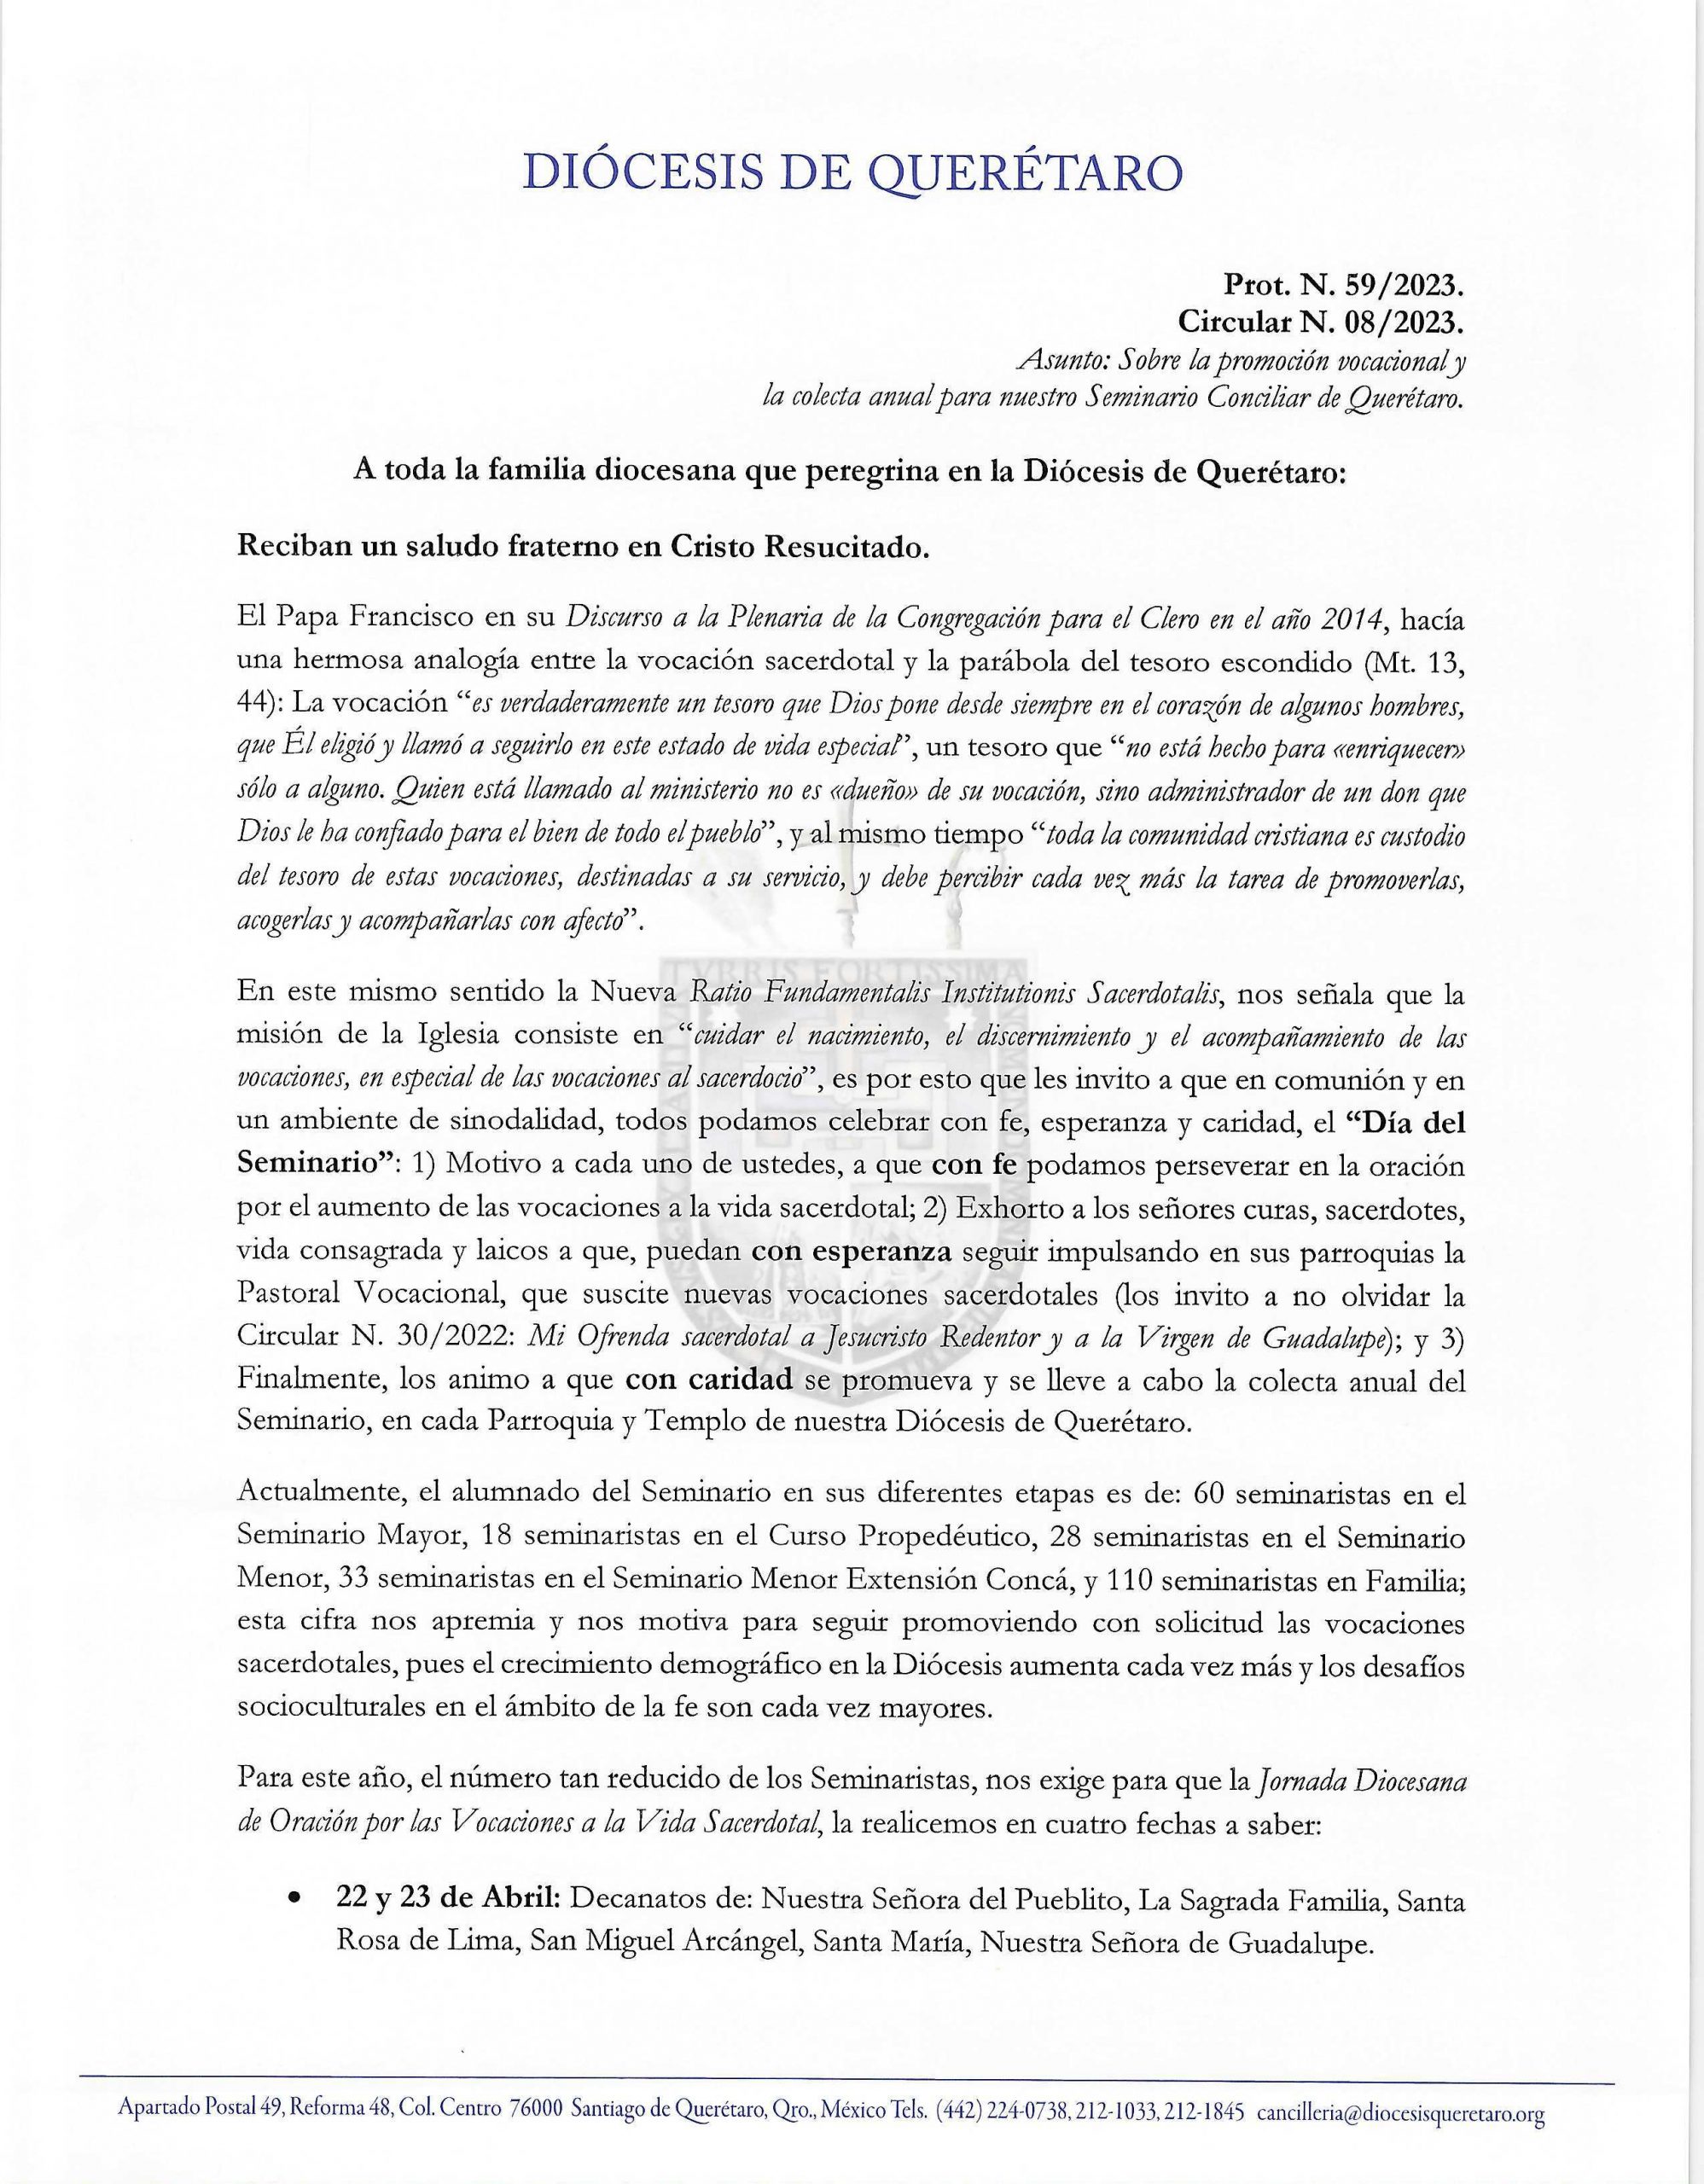 Circular N. 08/2023. Prot. N. 59/2023. Asunto: Sobre la promoción vocacional y la colecta anual para nuestro Seminario Conciliar de Querétaro.